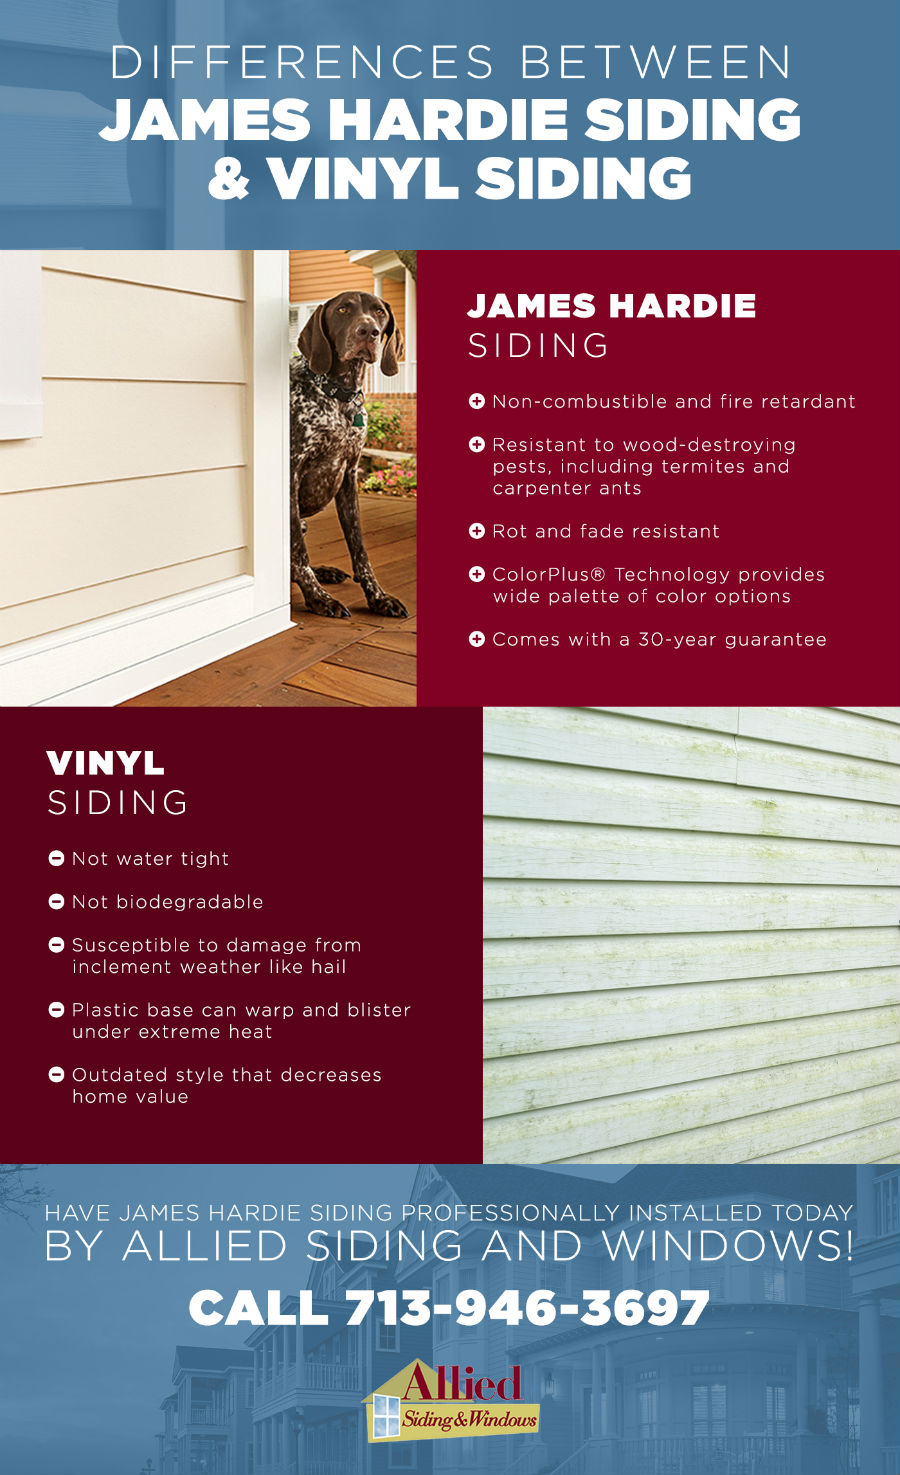 james hardie vs vinyl siding